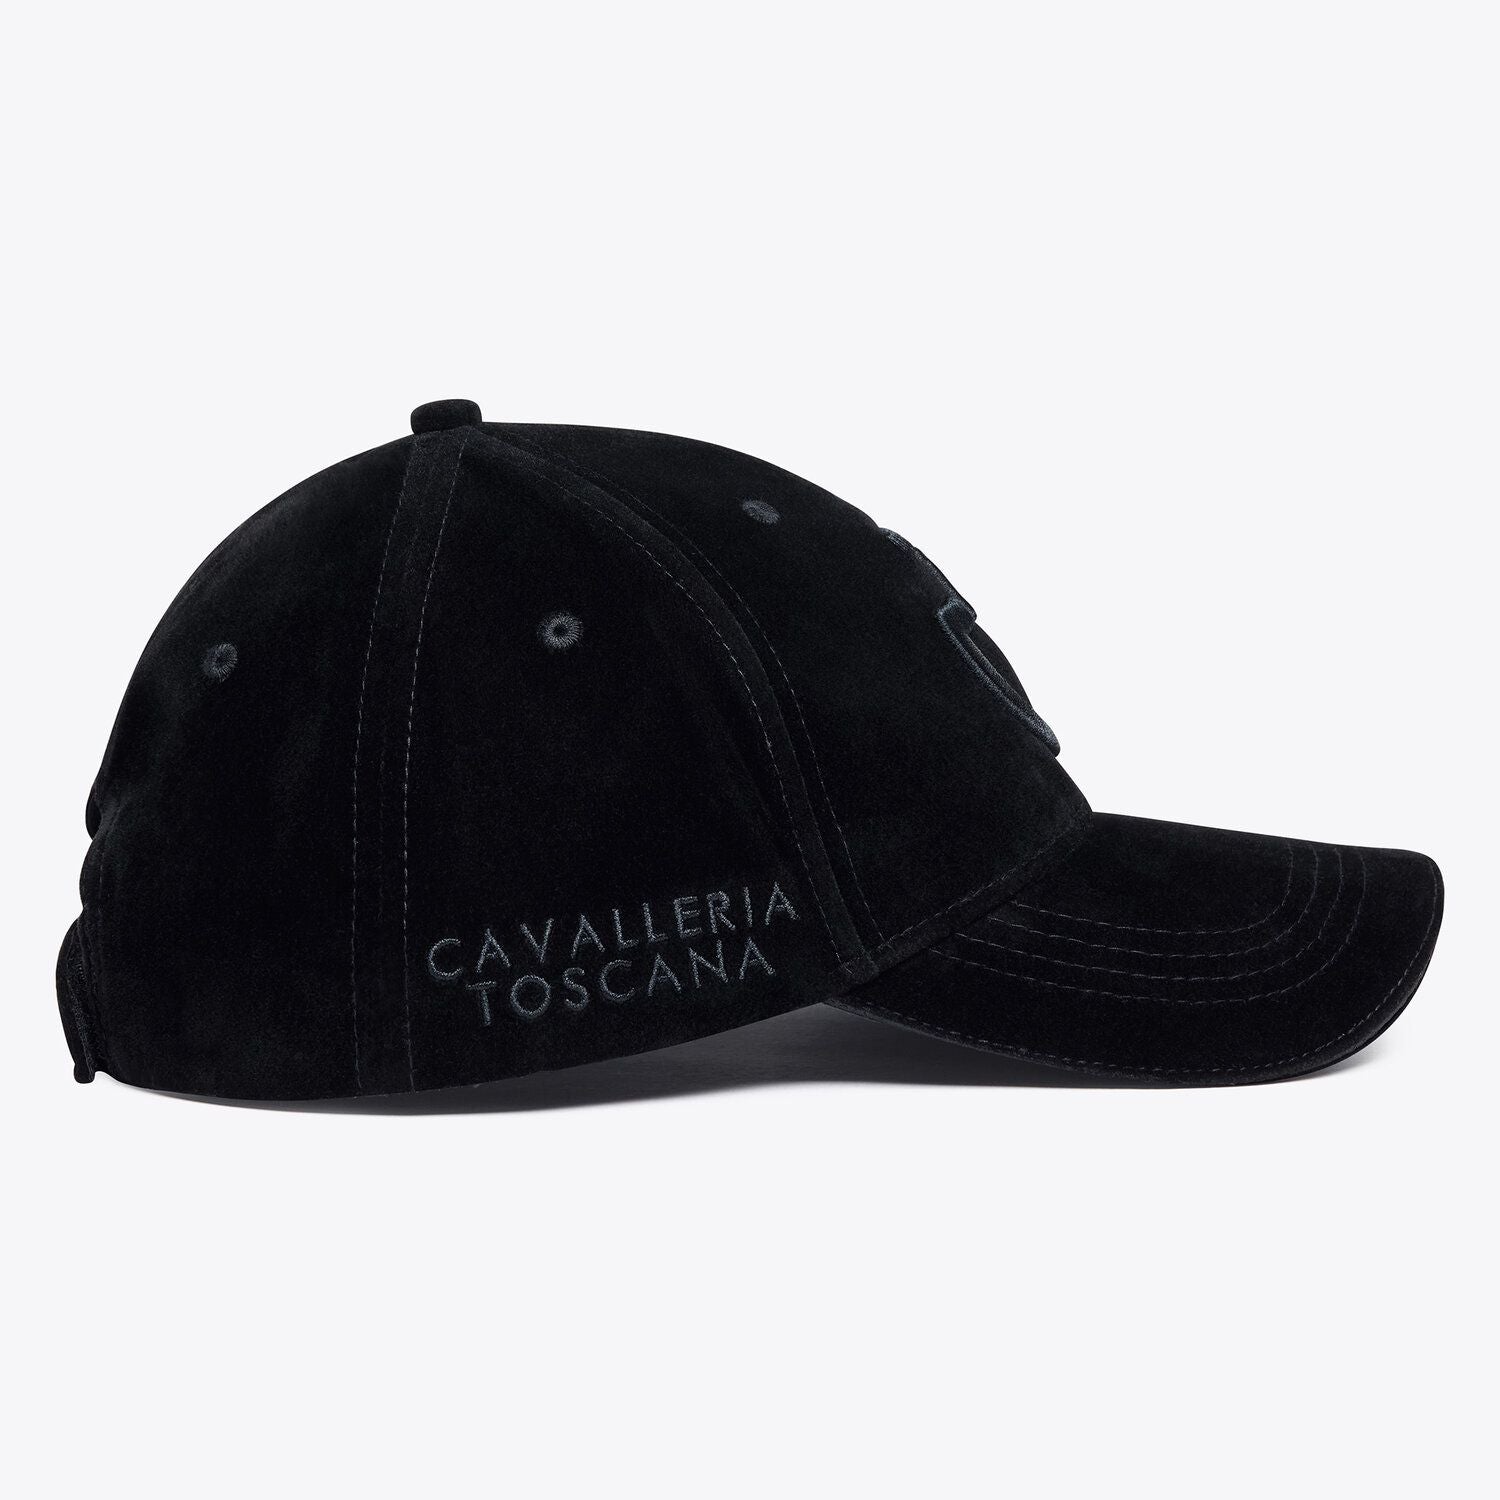 CAVALLERIA TOSCANA VELVET BASEBALL CAP BLACK